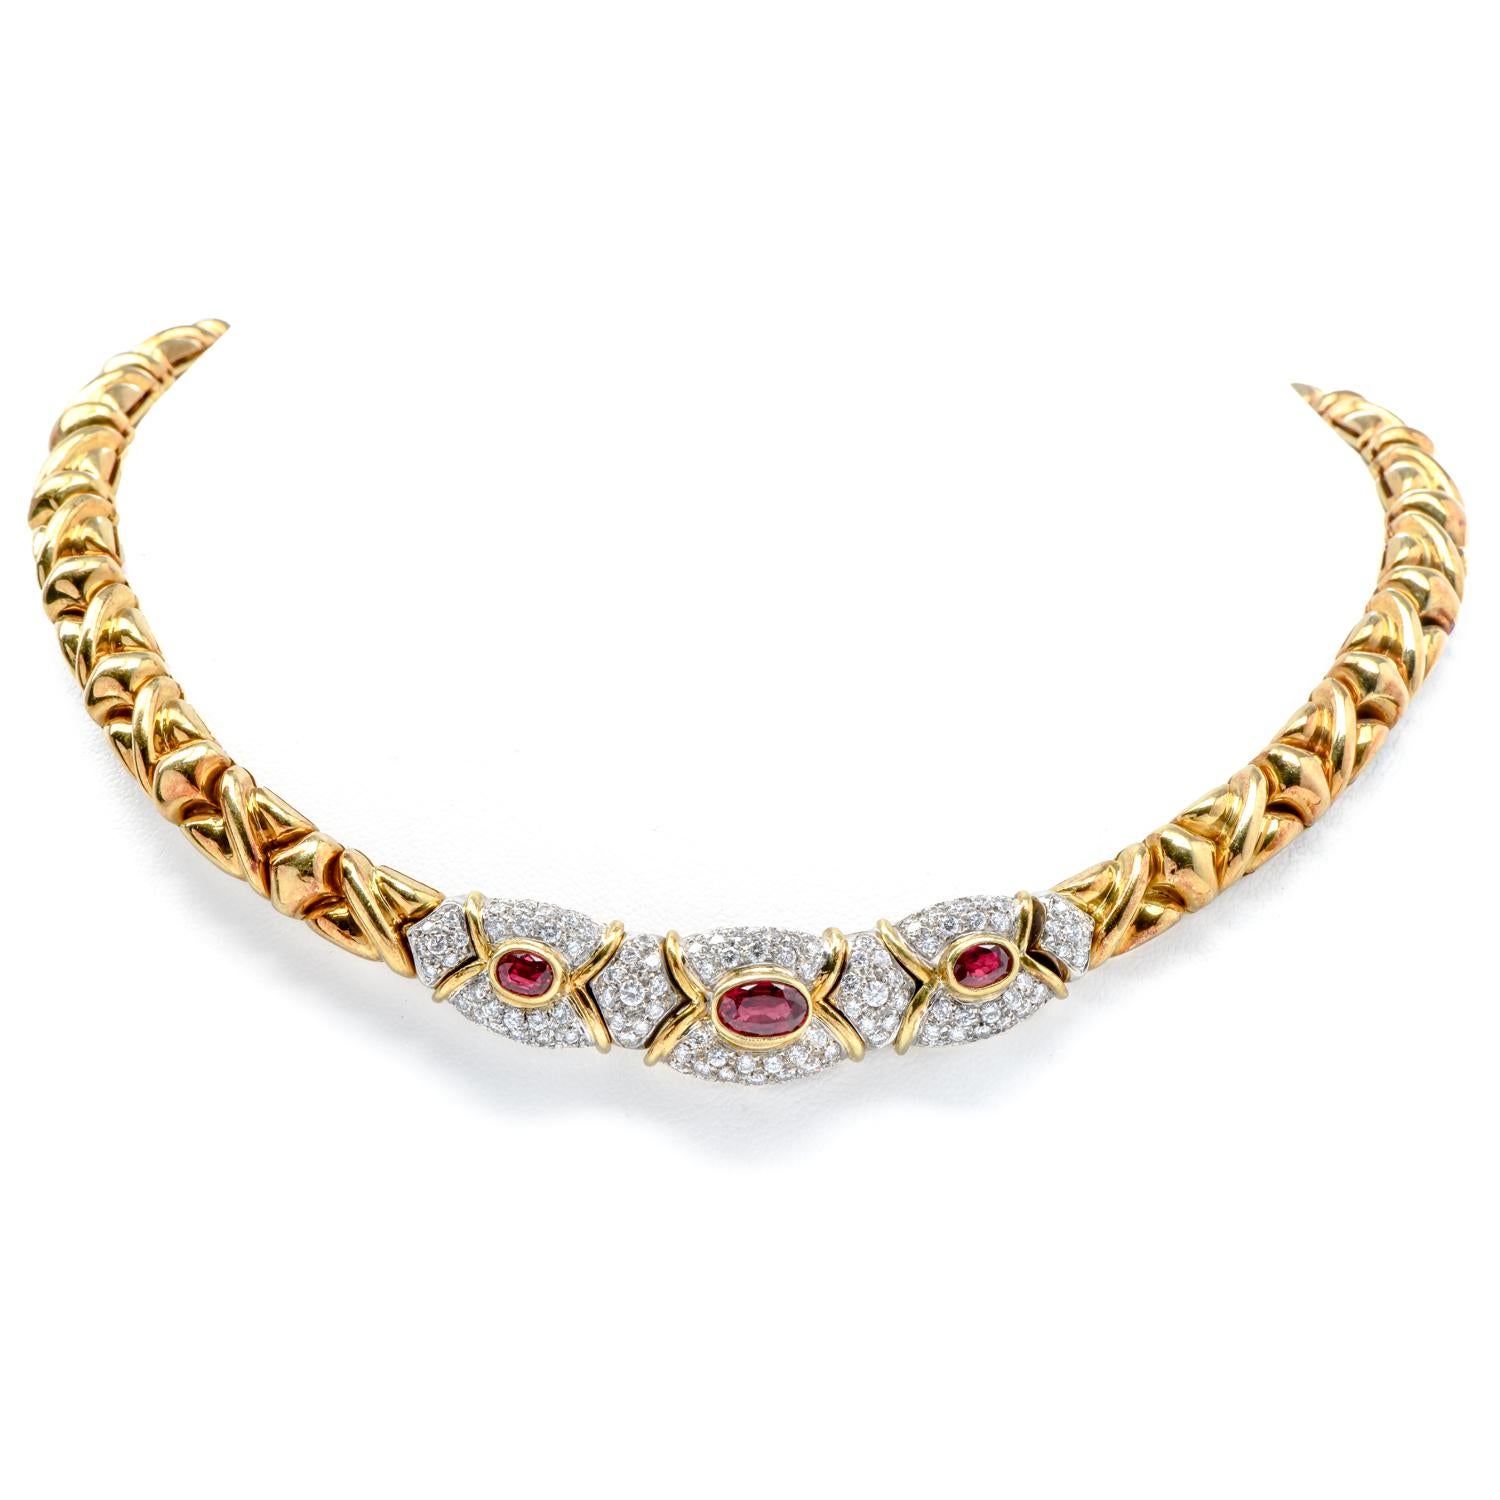 Ein exquisites, in Italien hergestelltes Set aus Diamant- und Rubinschmuck, mit passendem Ring, Ohrringen und spektakulärer Halskette.

Vollständig aus 18 Karat Gelbgold mit Akzenten aus 18 Karat Weißgold gefertigt.

Die Halskette ist 15